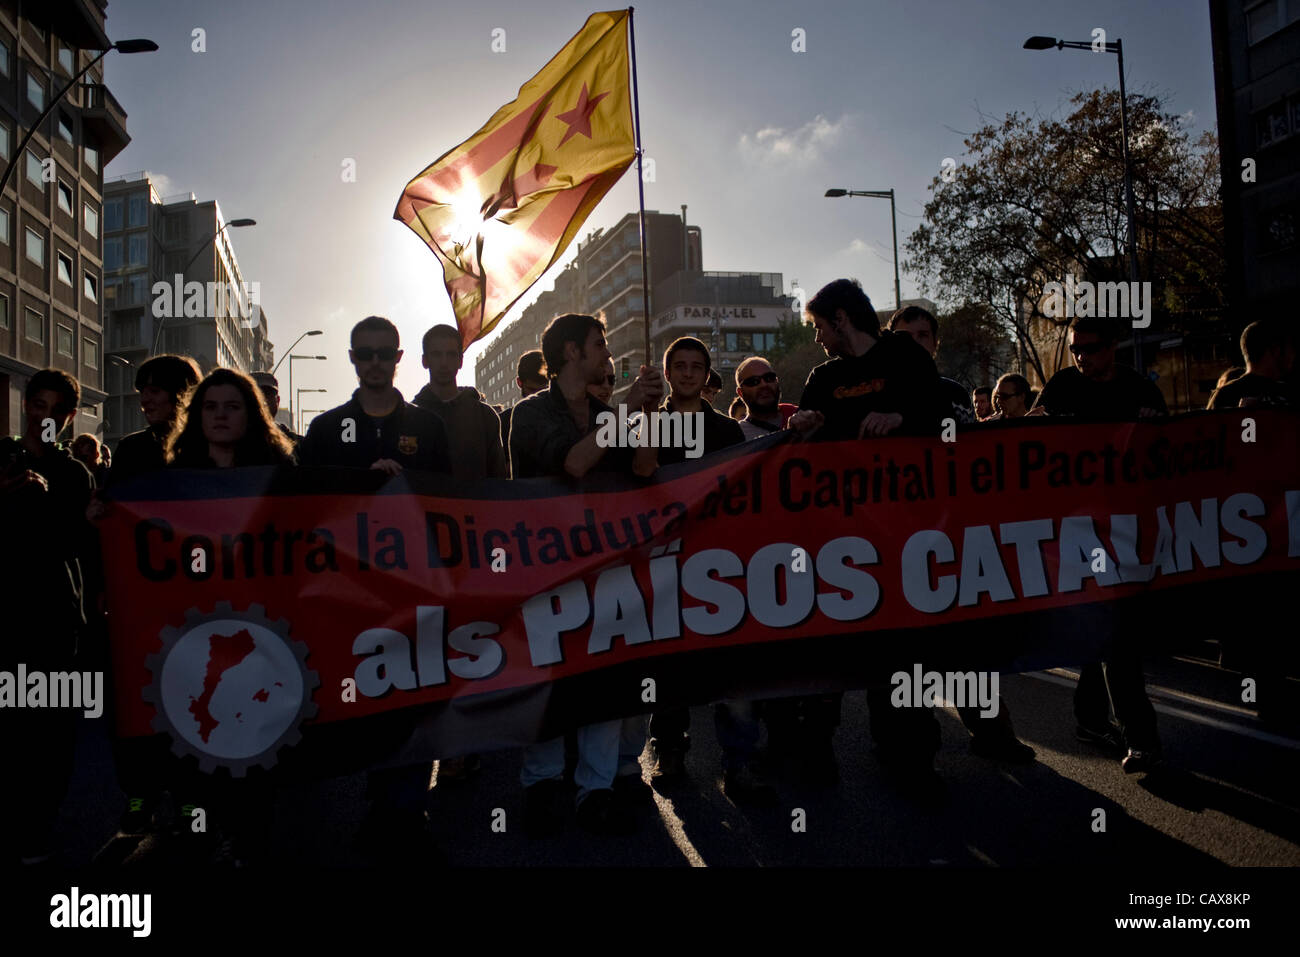 01 mai 2012 - Barcelone, Espagne. Un drapeau catalan avec l'étoile (symbole de l'indépendance) au cours de la célébration de la journée de démonstration alternative peut formé par les syndicats minoritaires et avec la présence d'un grand déploiement de police. Banque D'Images